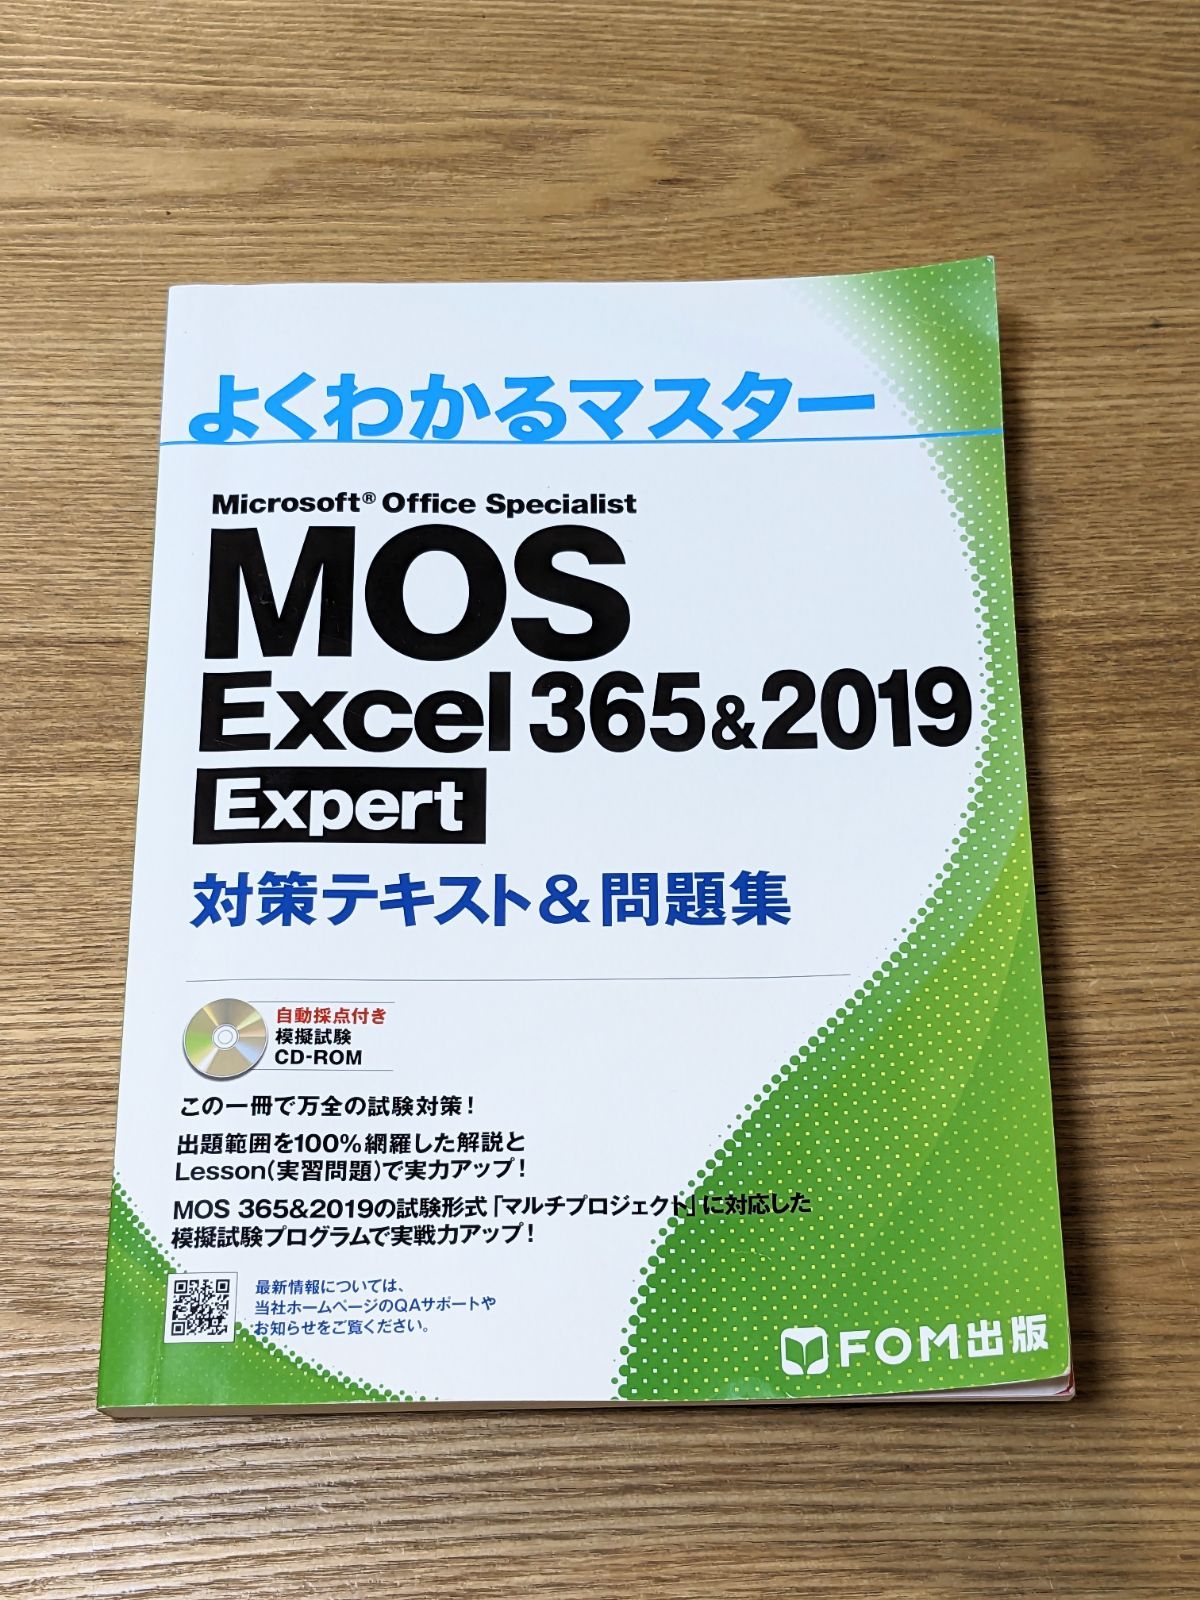 よくわかるマスター MOS Excel 365&2019 Expert - おもてなし商店